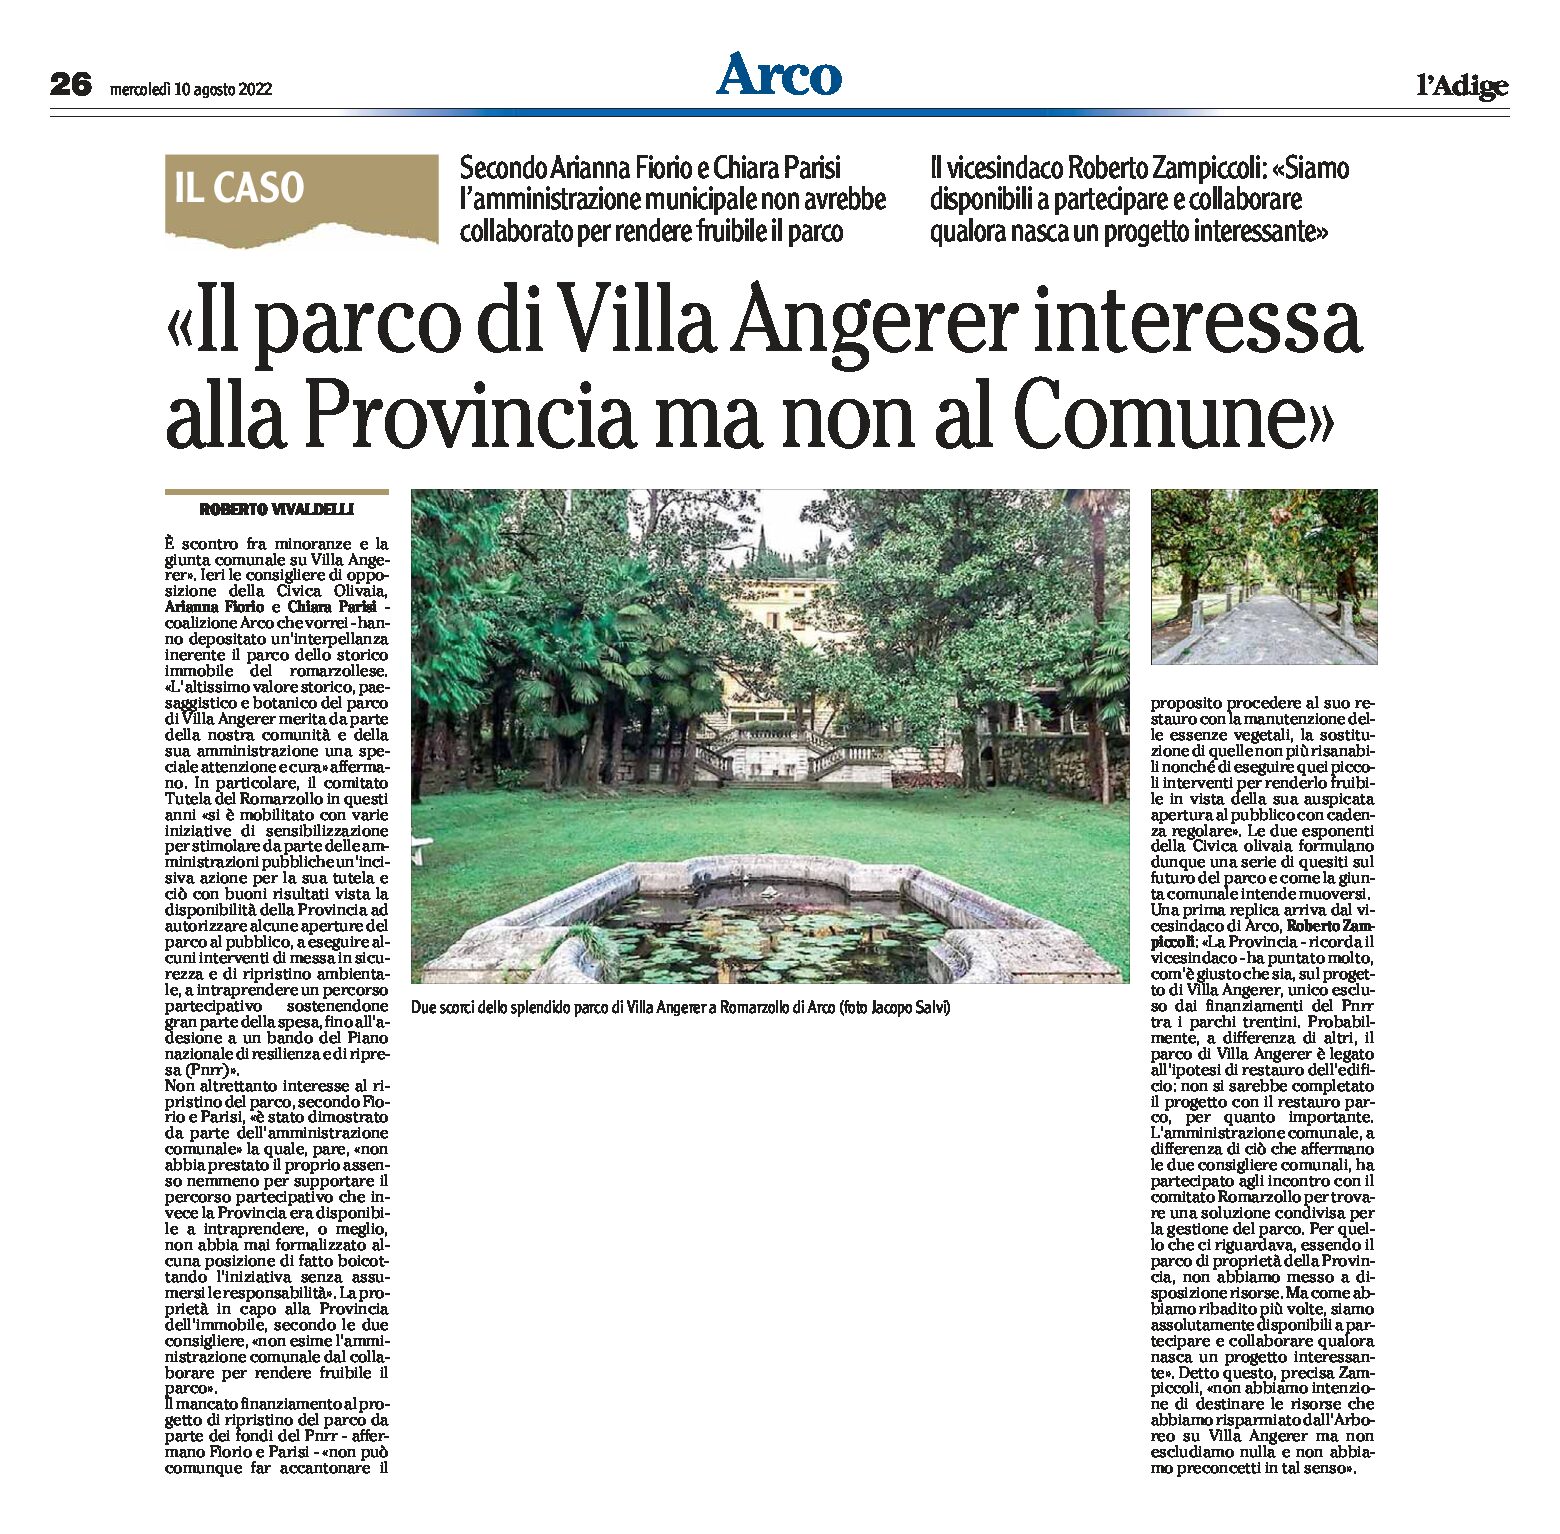 Arco: il parco di Villa Angerer interessa alla Provincia ma non al Comune